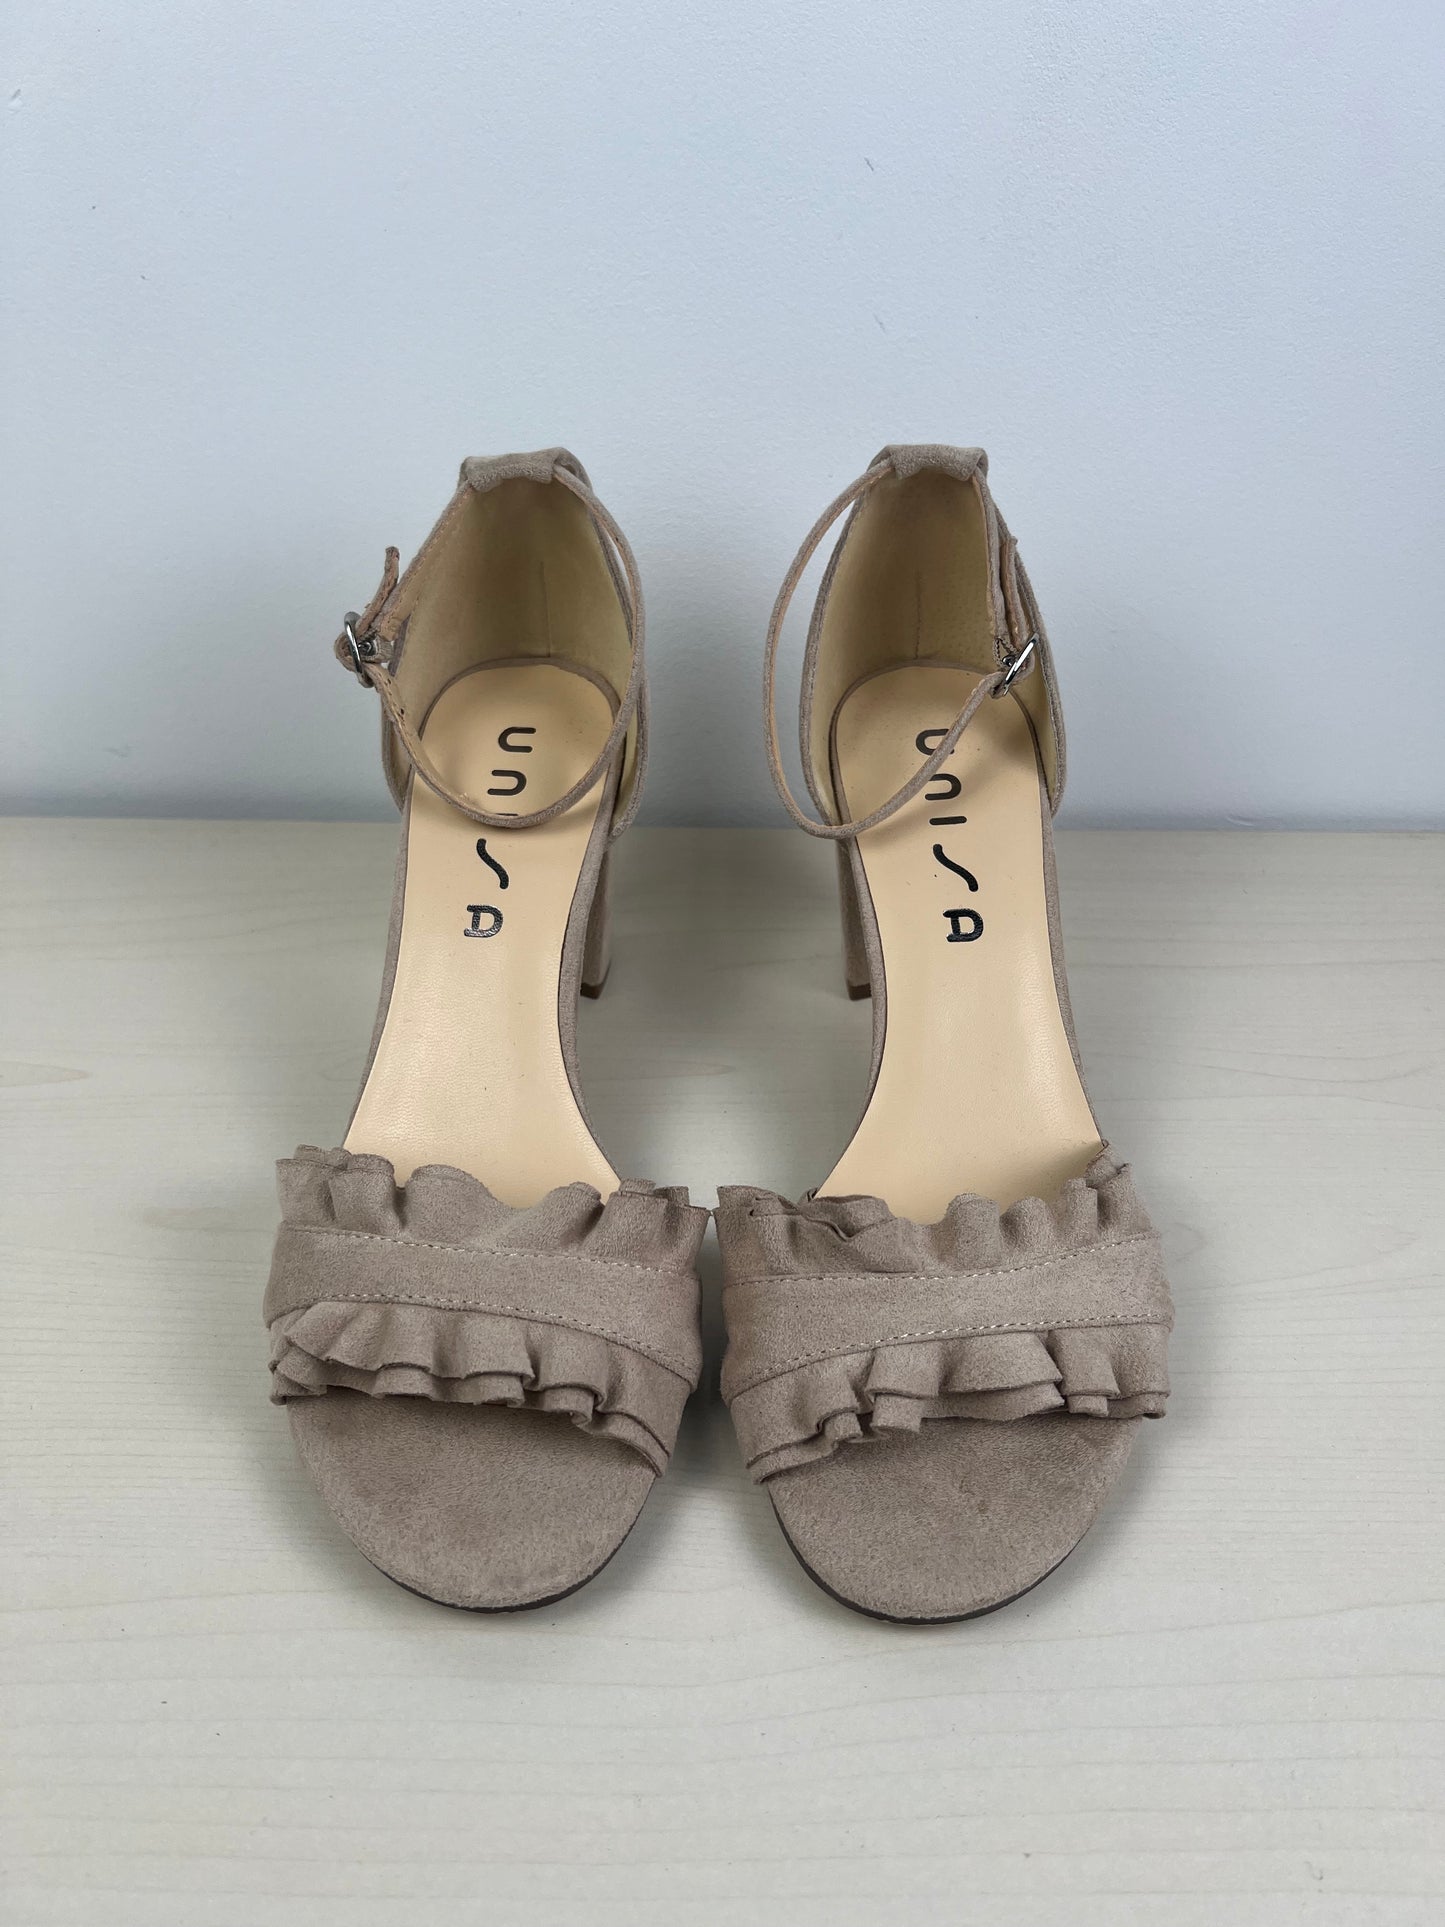 Sandals Heels Block By Unisa  Size: 9